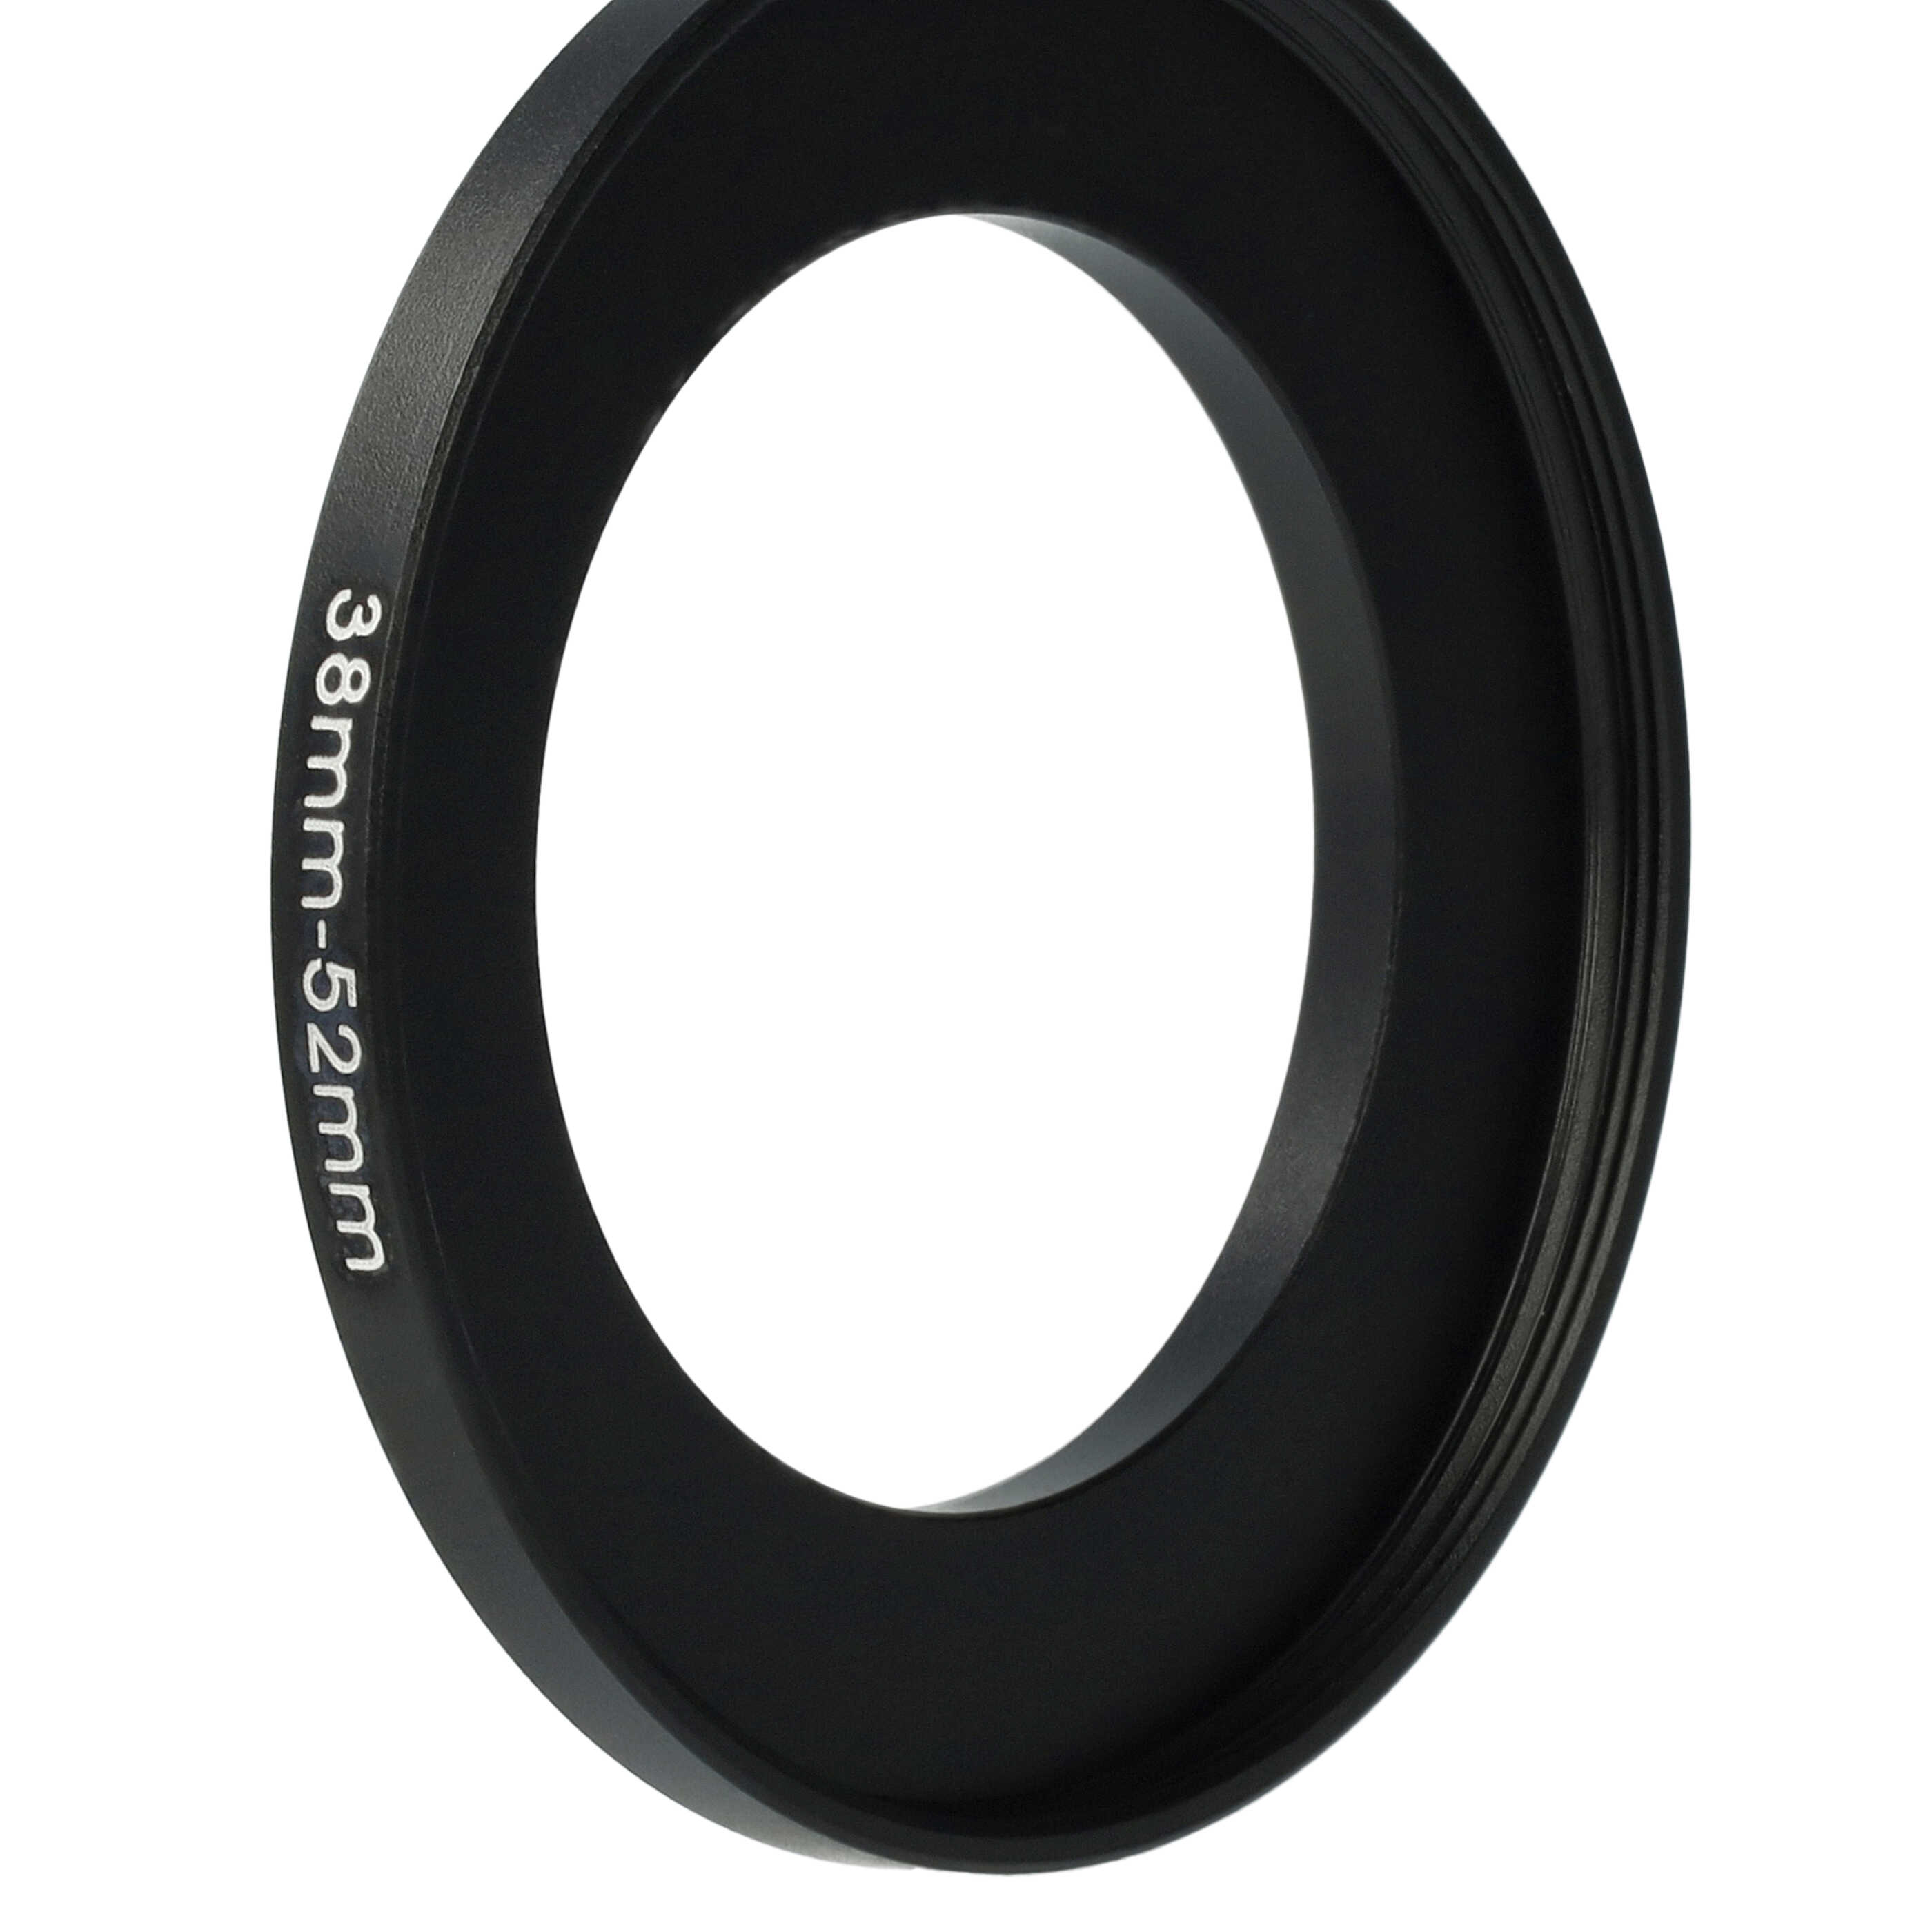 Step-Up-Ring Adapter 38 mm auf 52 mm passend für diverse Kamera-Objektive - Filteradapter